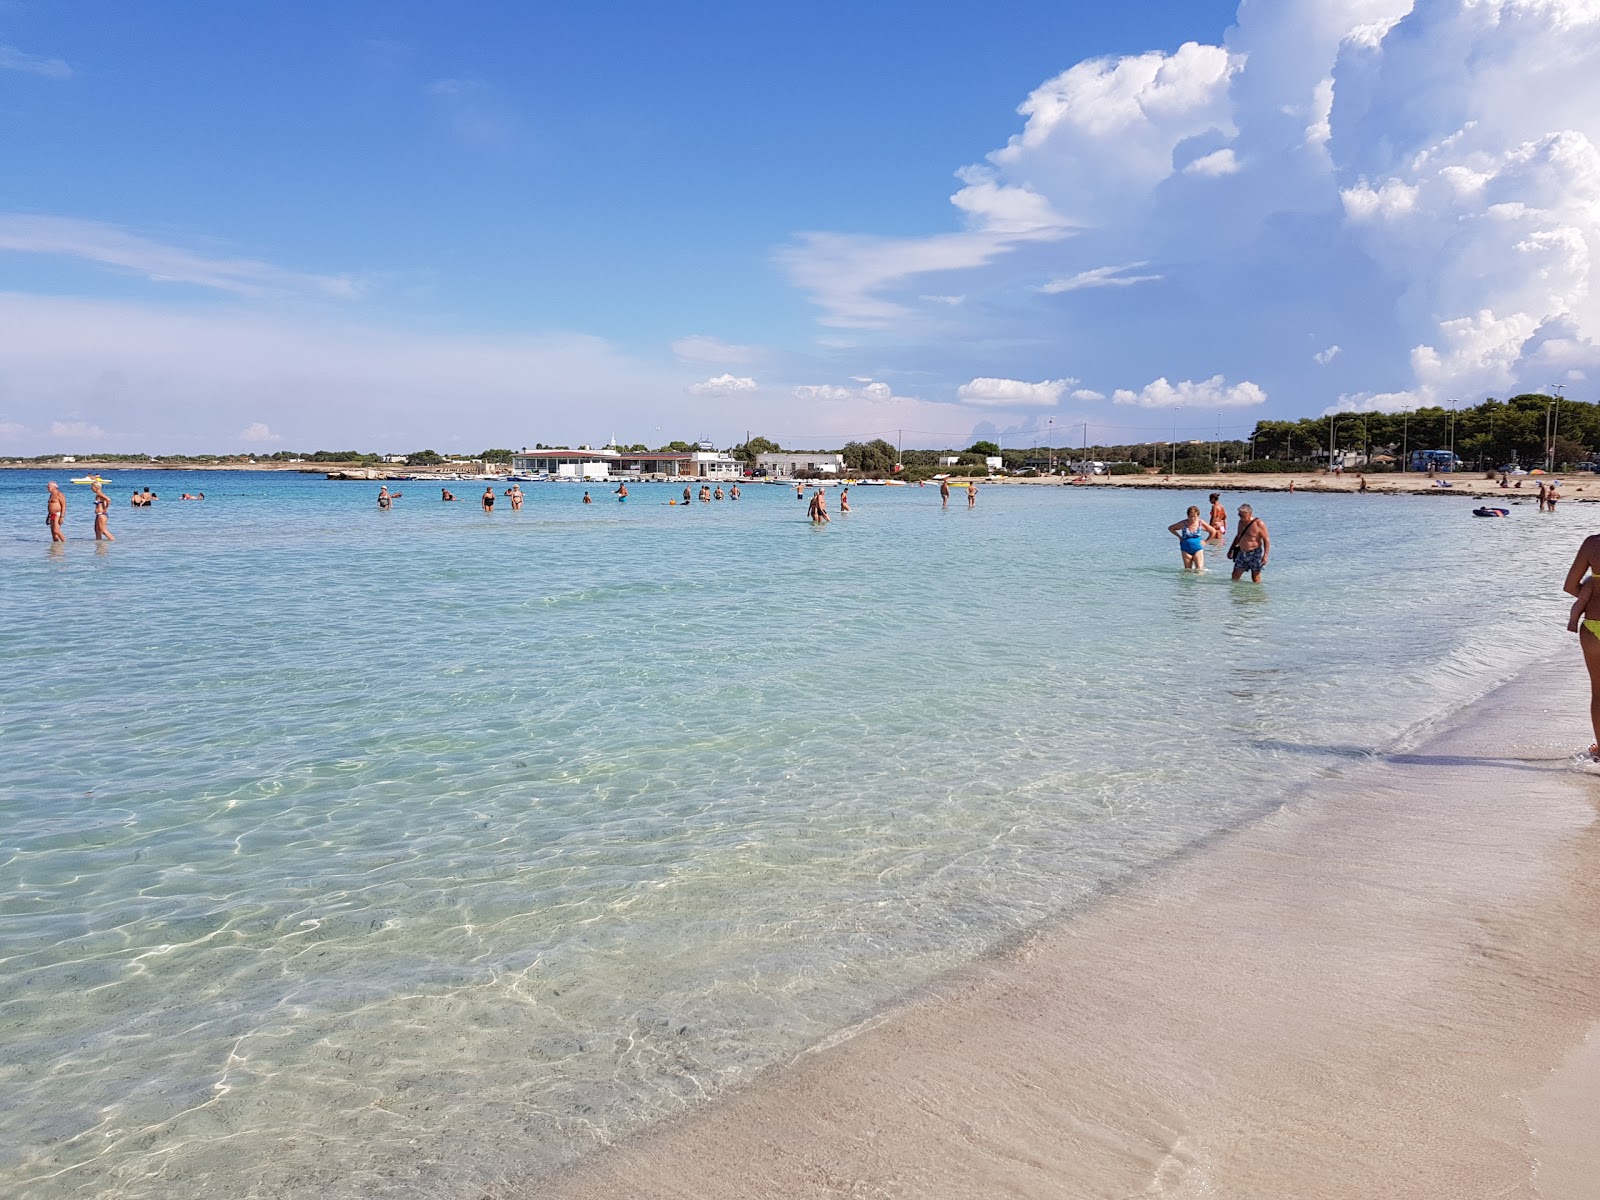 Spiaggia di Sant'Isidoro'in fotoğrafı parlak ince kum yüzey ile